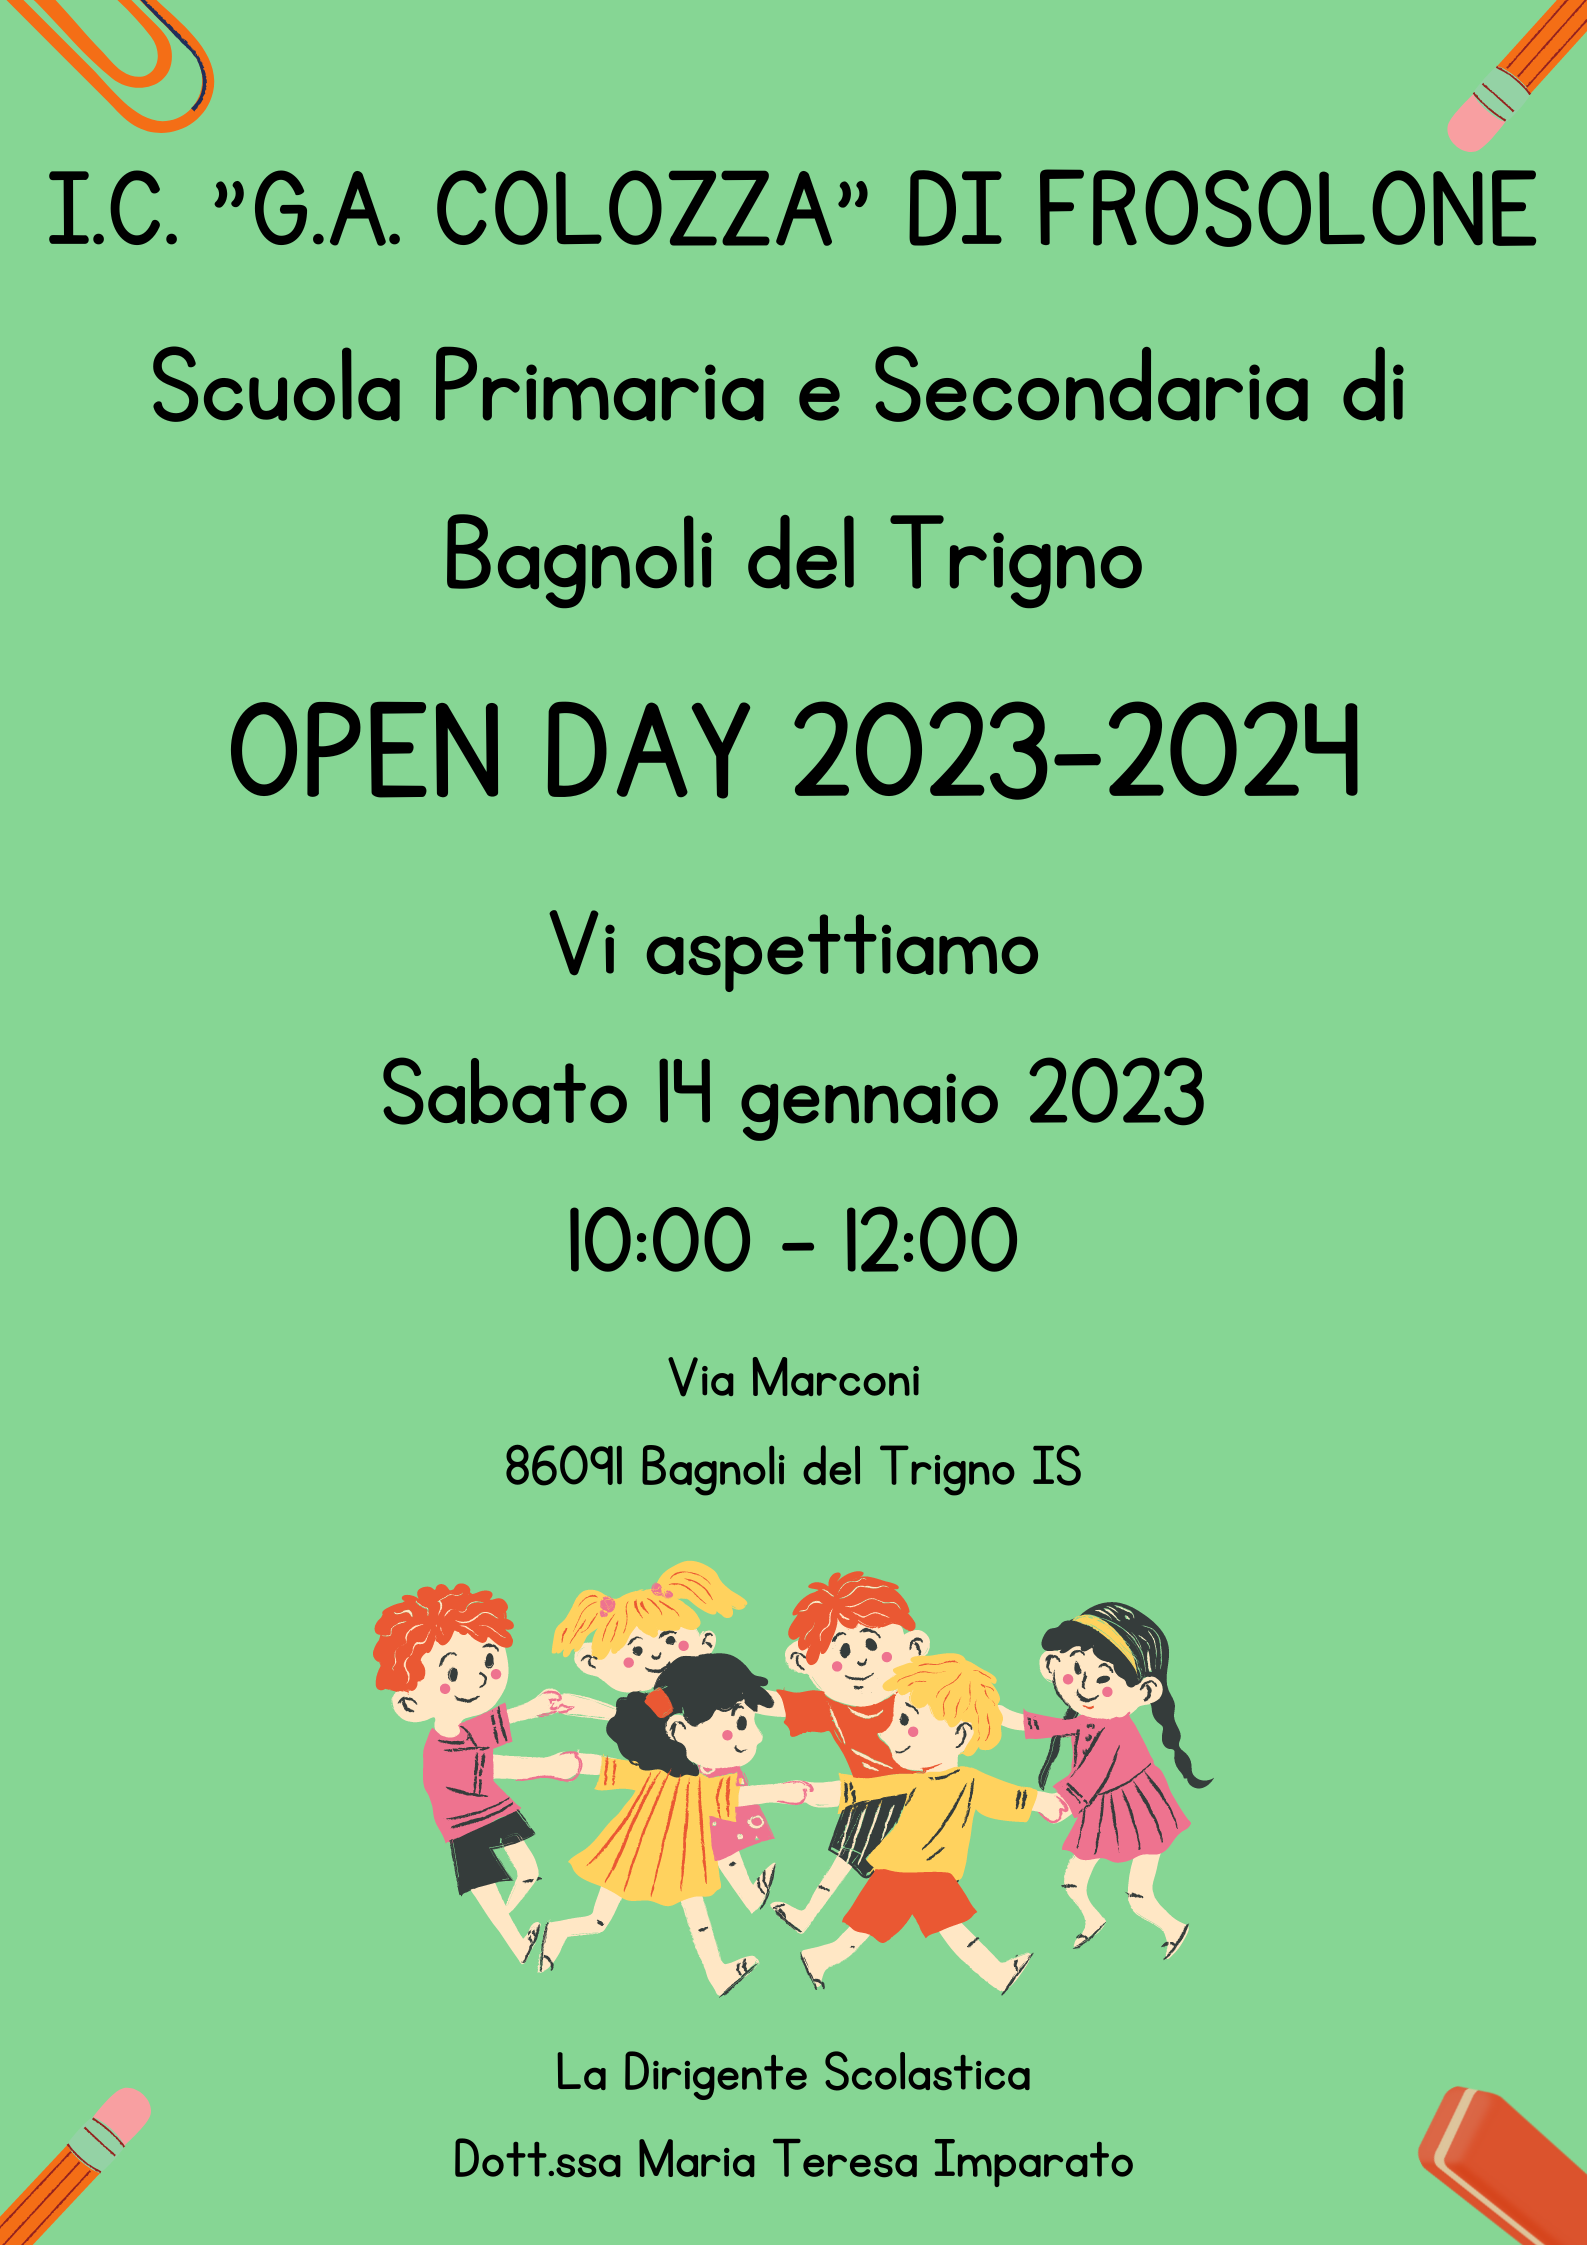 Al momento stai visualizzando Open Day Scuola Primaria e Secondaria di Bagnoli Del Trigno.